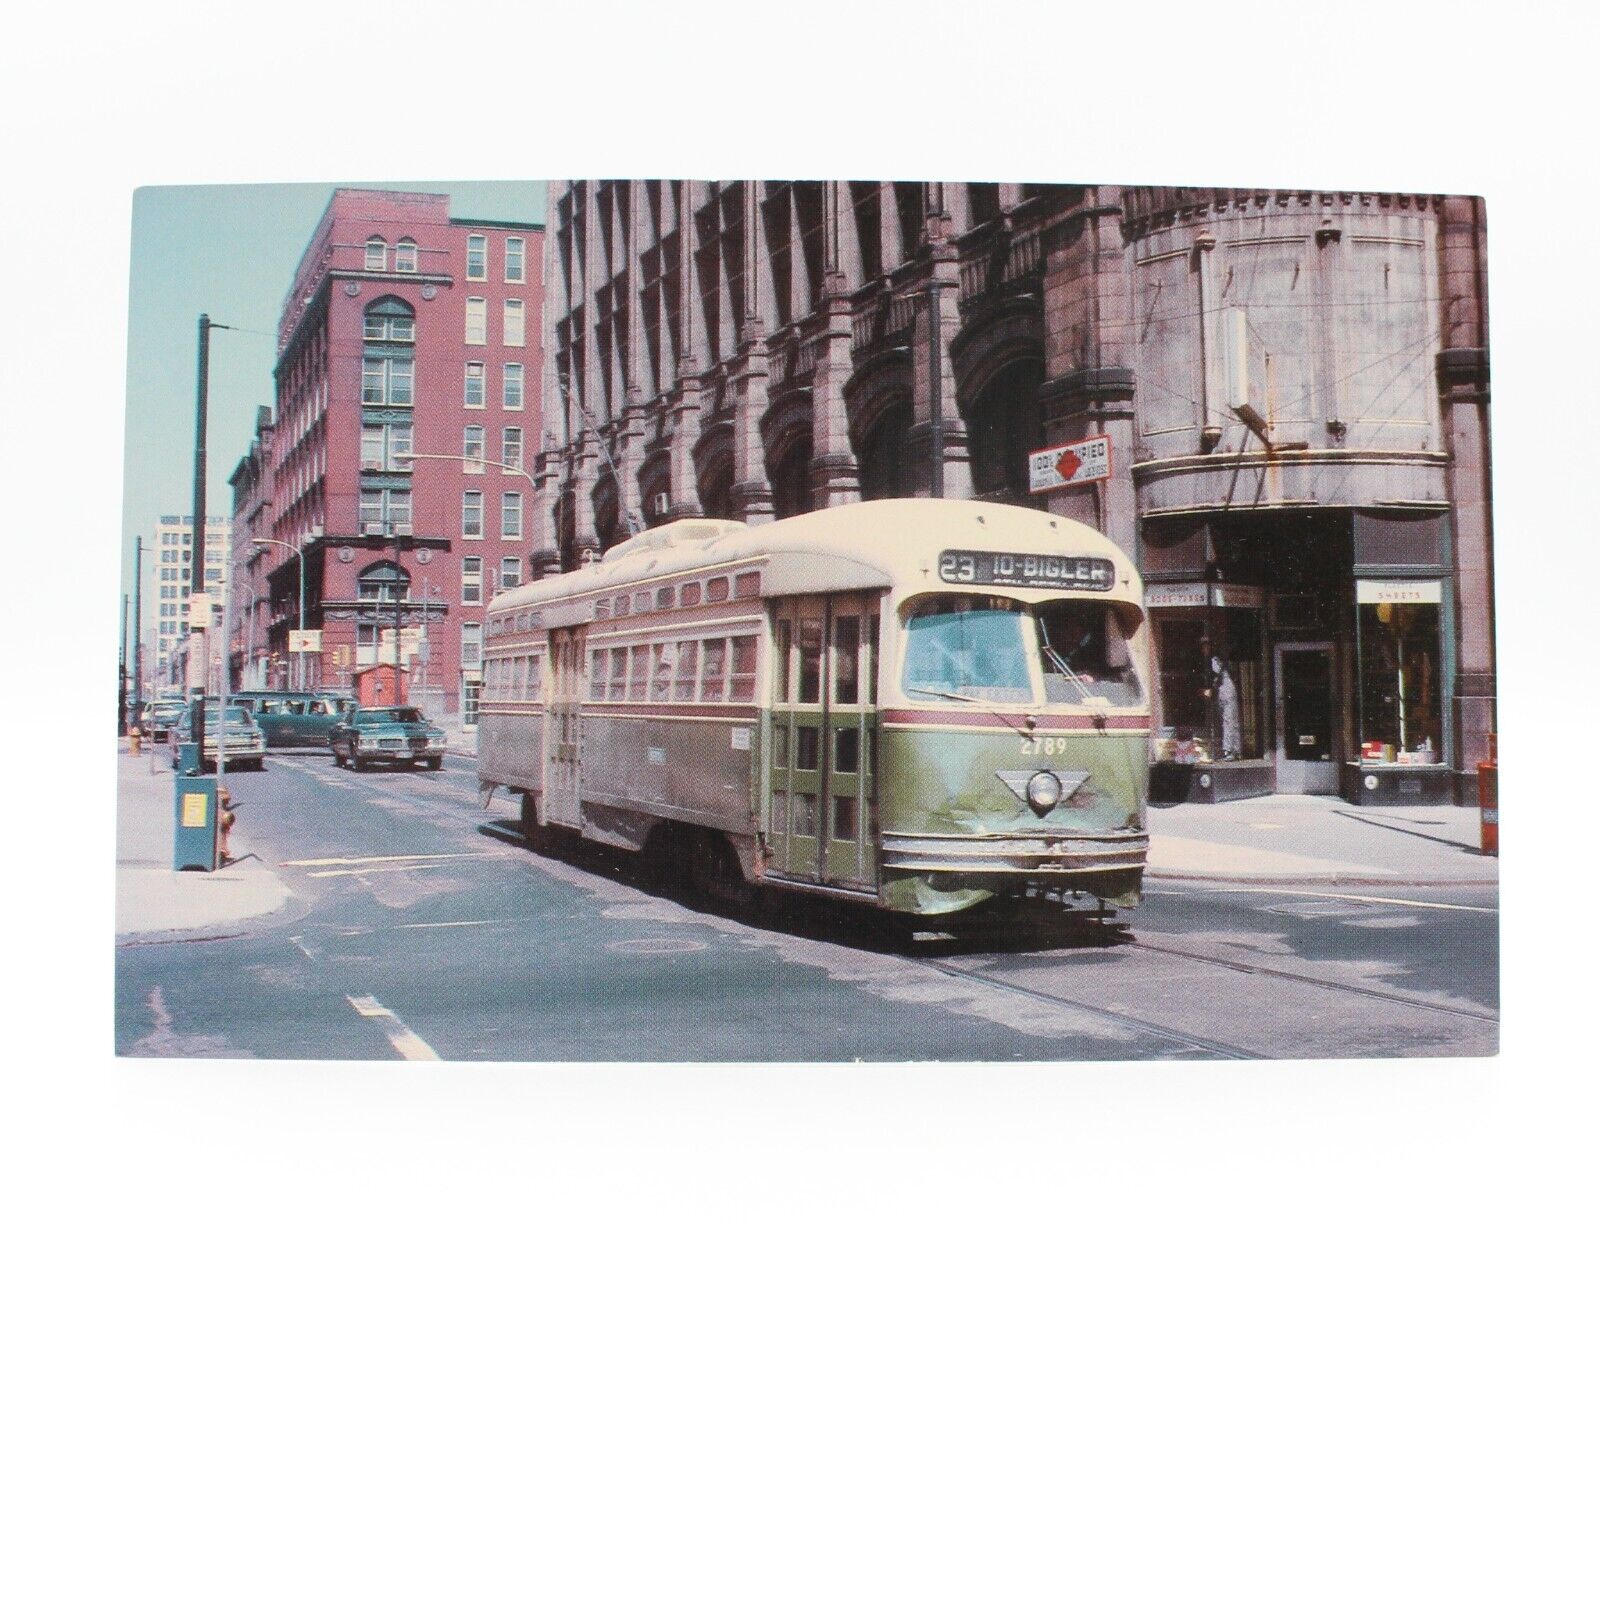 Septa PCC Trolley  No 2789 Philadelphia PA 1970  Route 23